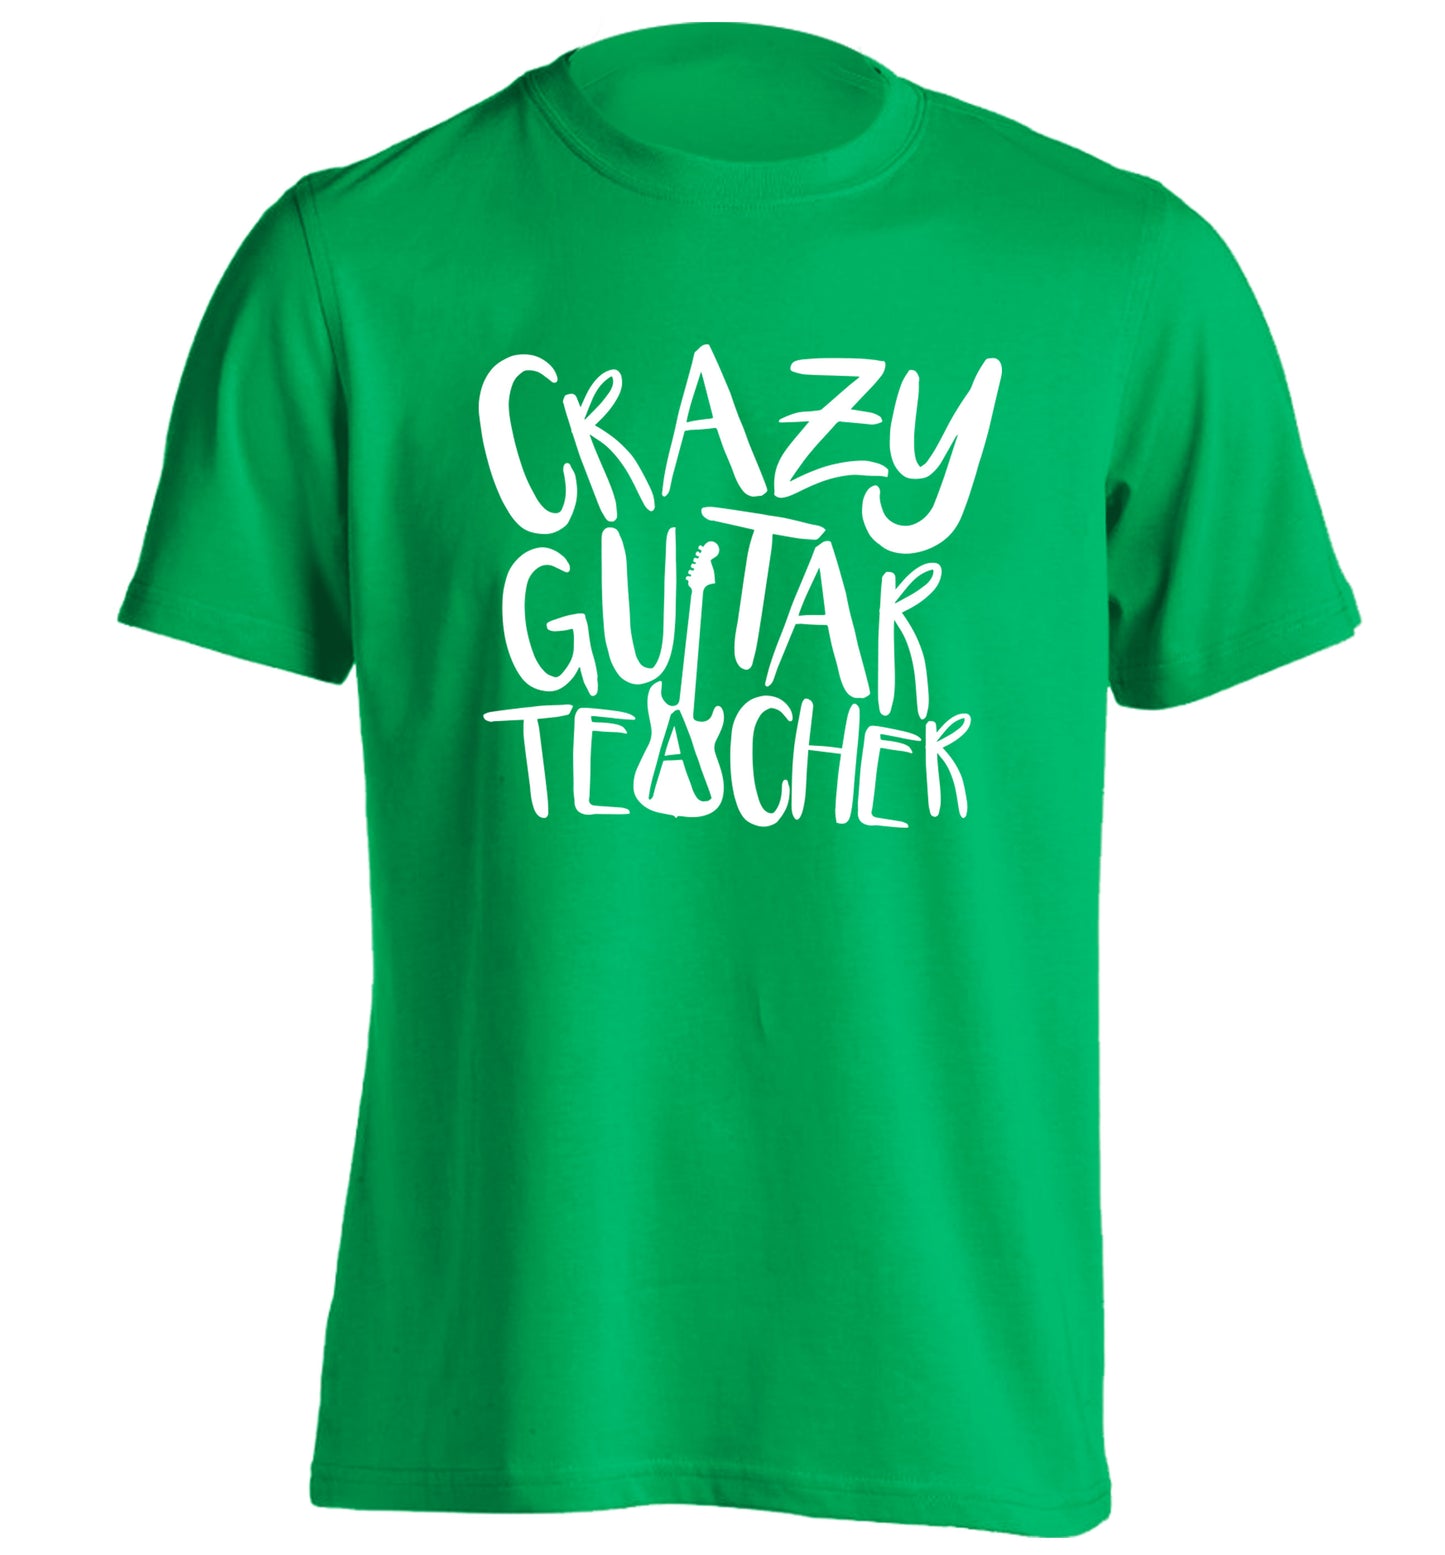 Crazy guitar teacher adults unisex green Tshirt 2XL